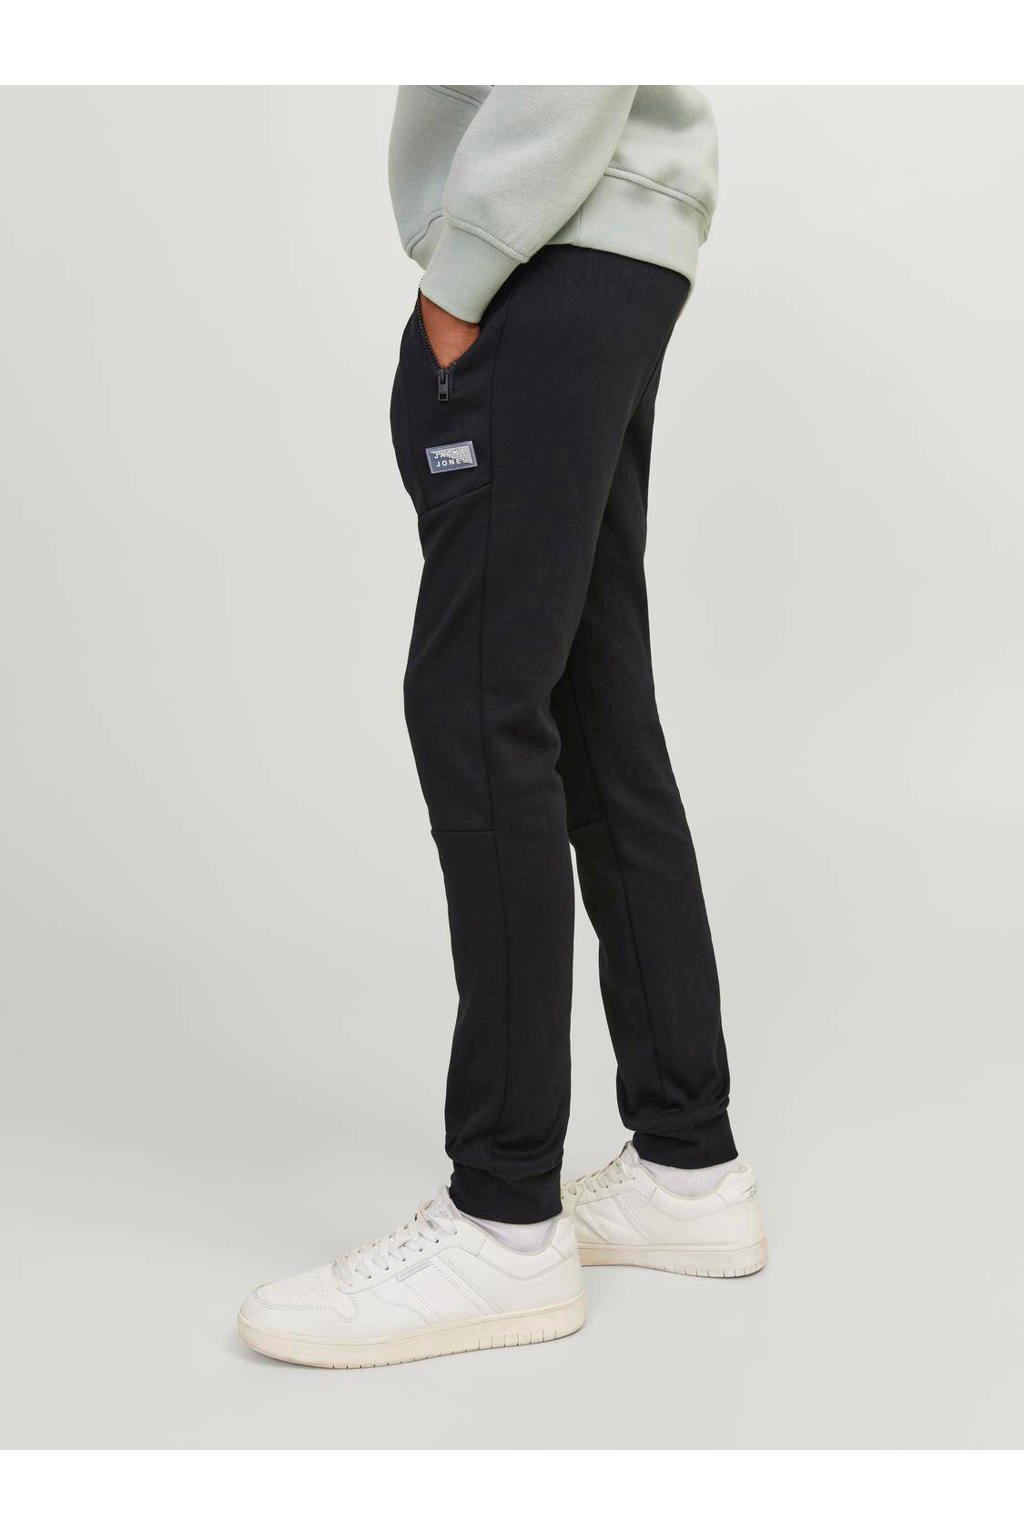 Zwarte jongens JACK & JONES JUNIOR joggingbroek van sweat materiaal met regular waist, elastische tailleband met koord en logo dessin